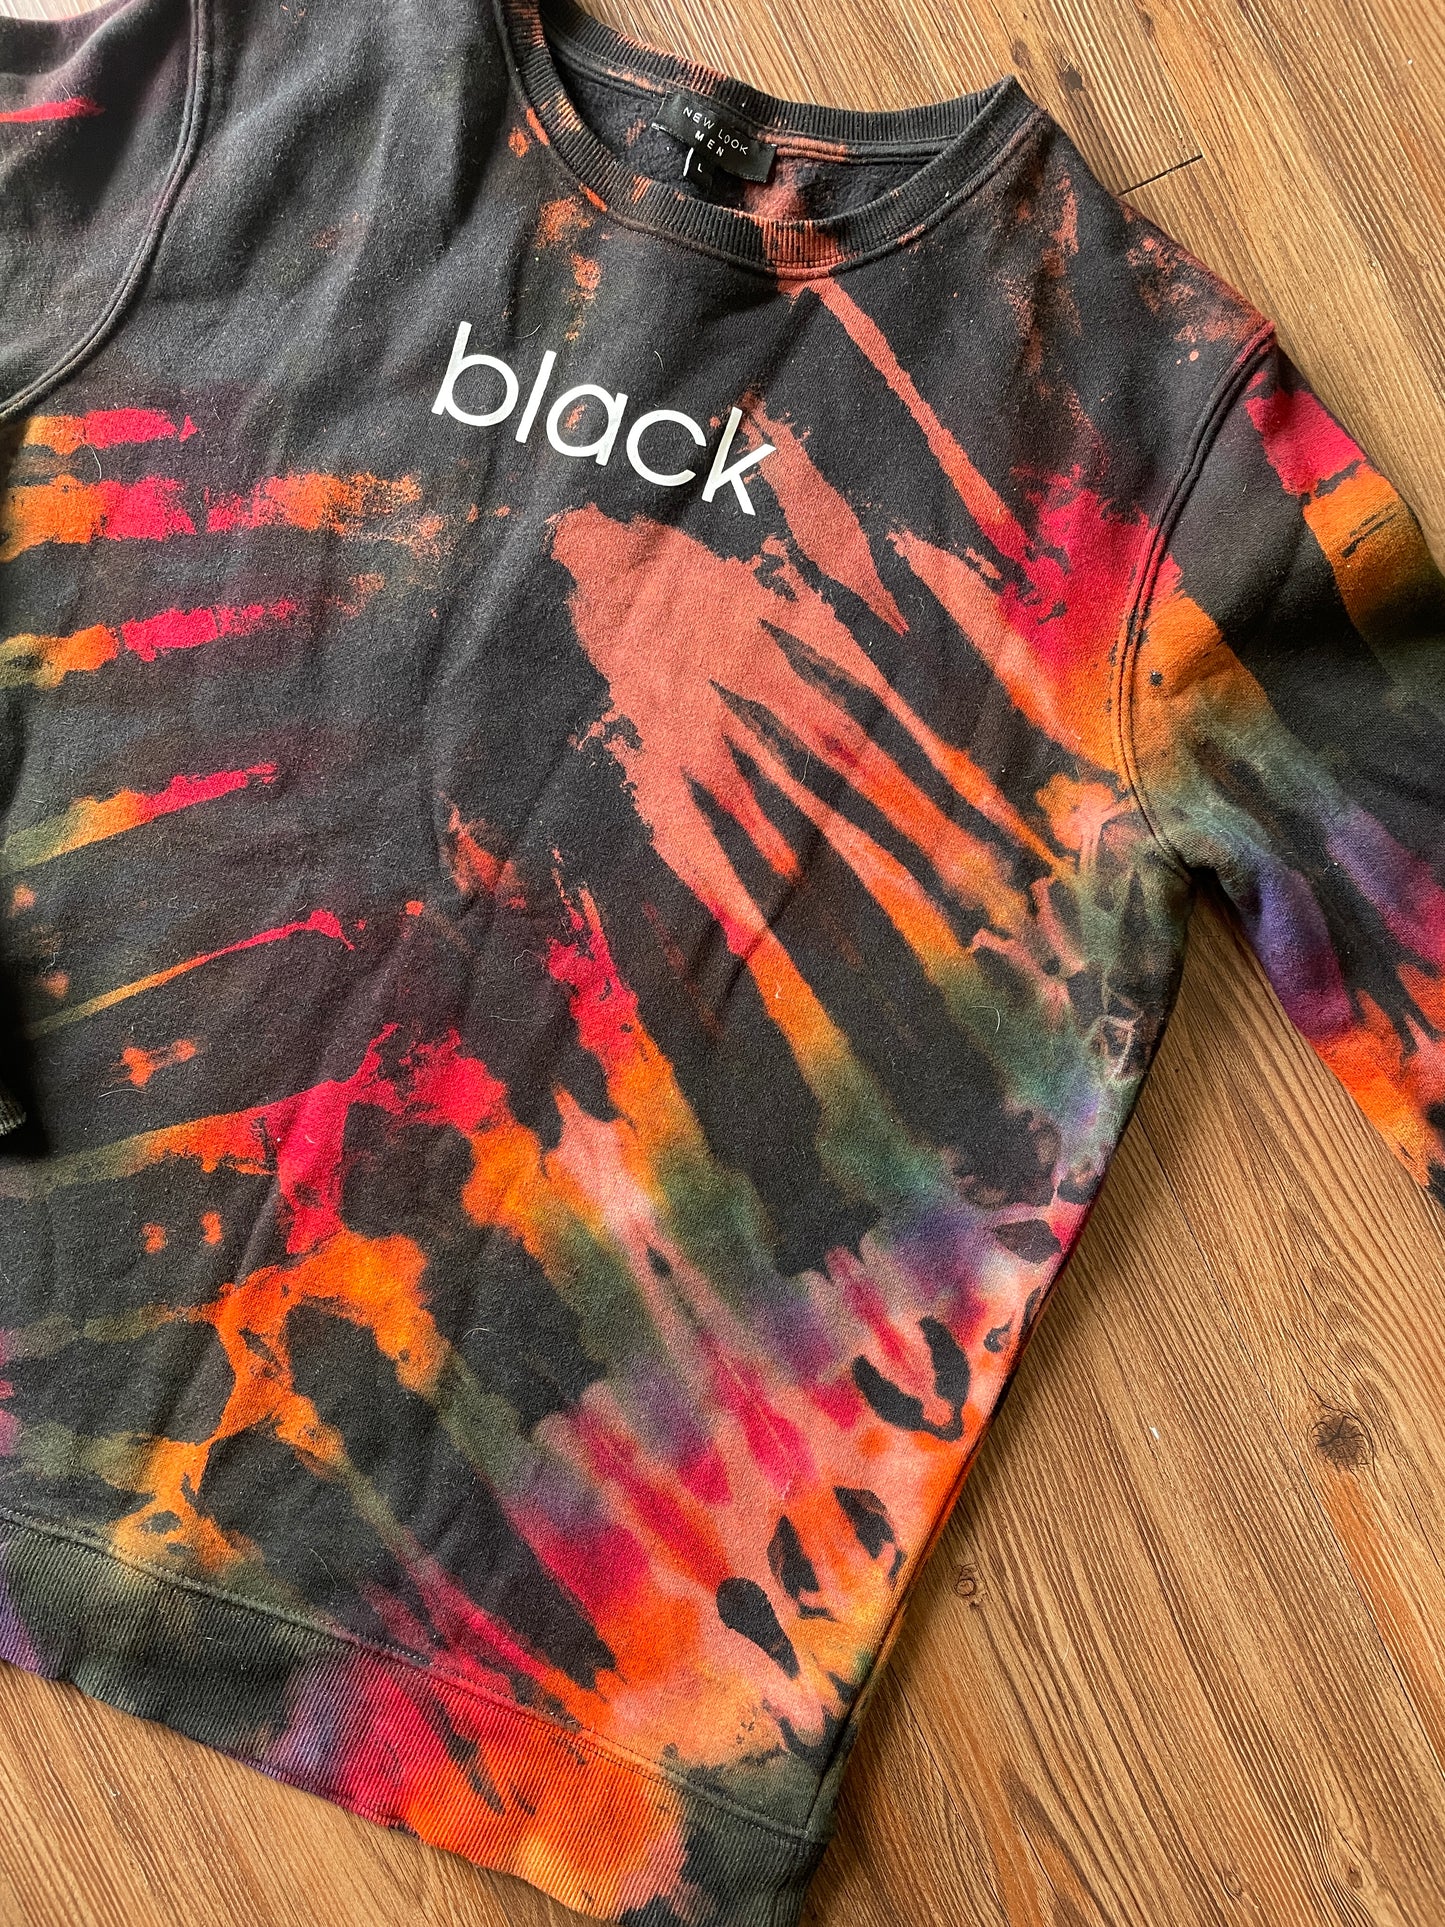 LARGE Men’s BLACK Tie Dye Crewneck Sweatshirt | Black and Rainbow Reverse Tie Dye Long Sleeve